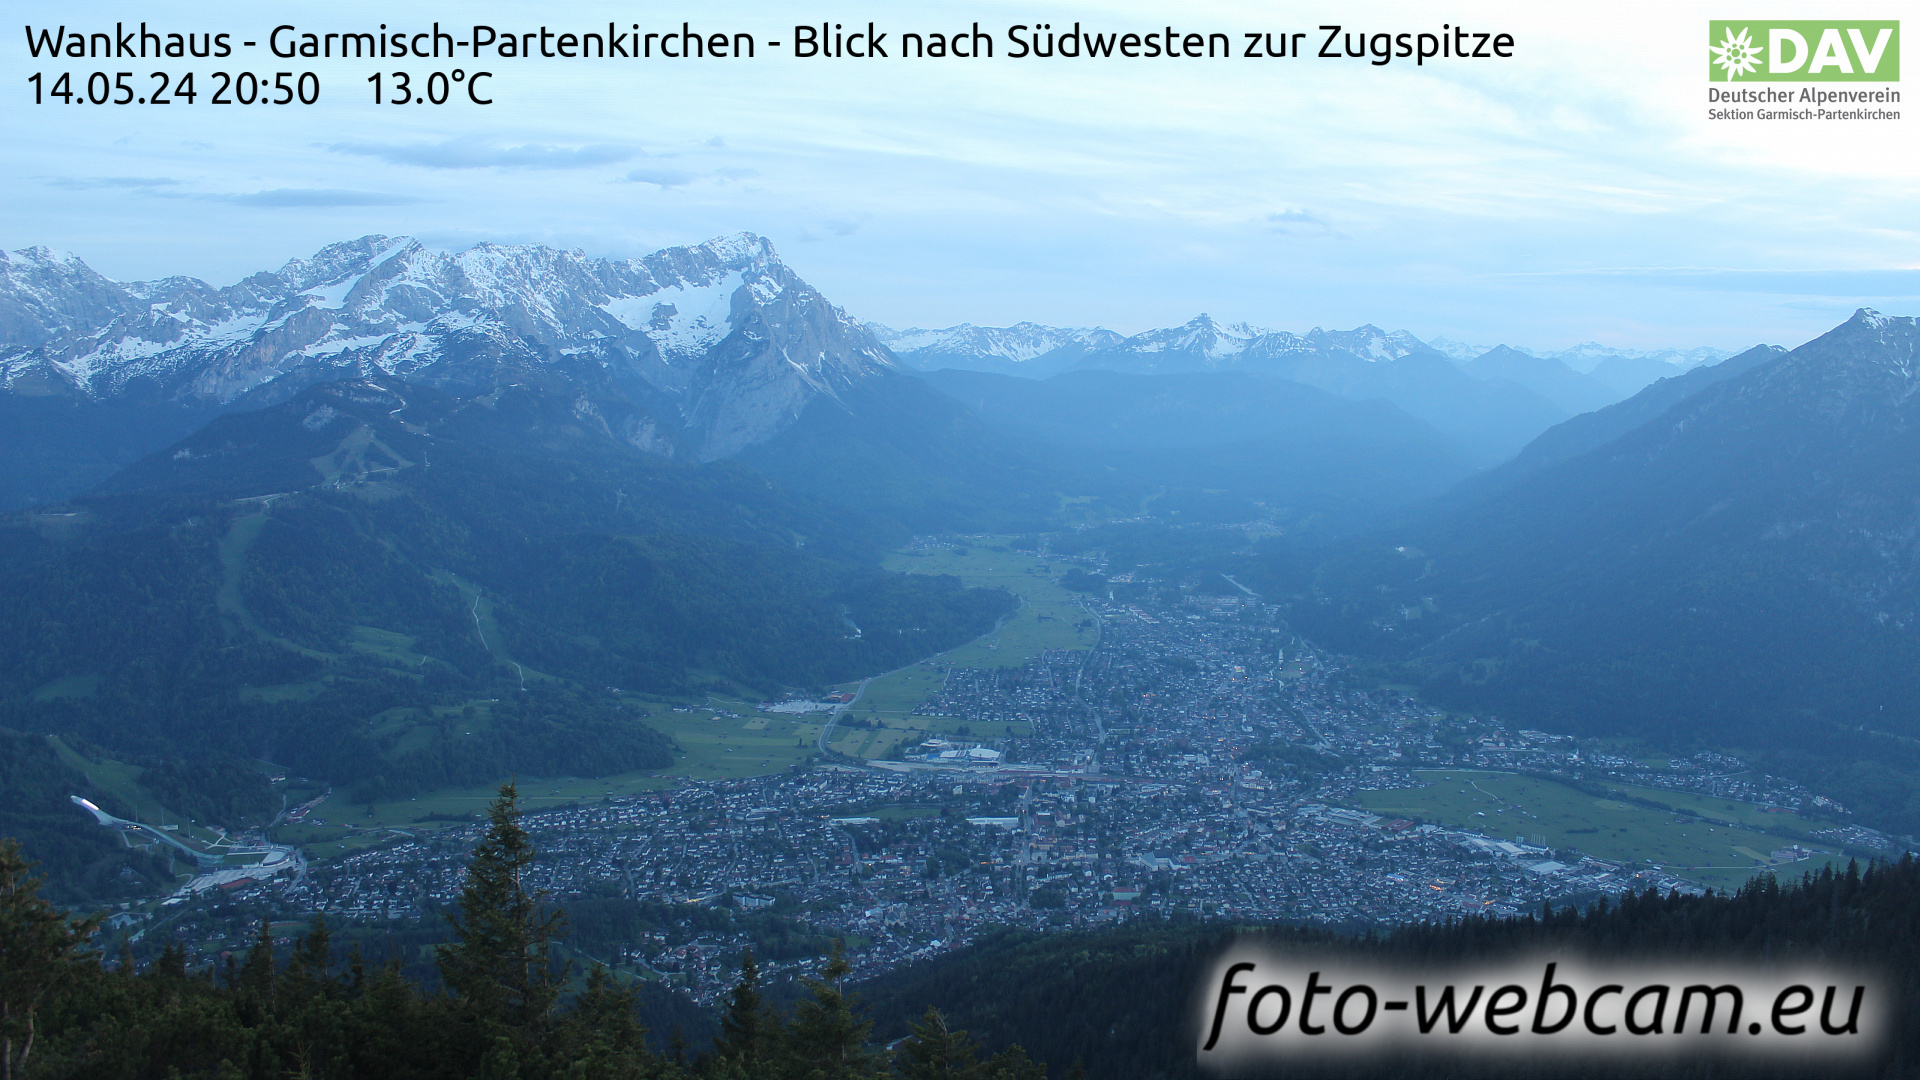 Garmisch-Partenkirchen Wed. 20:51